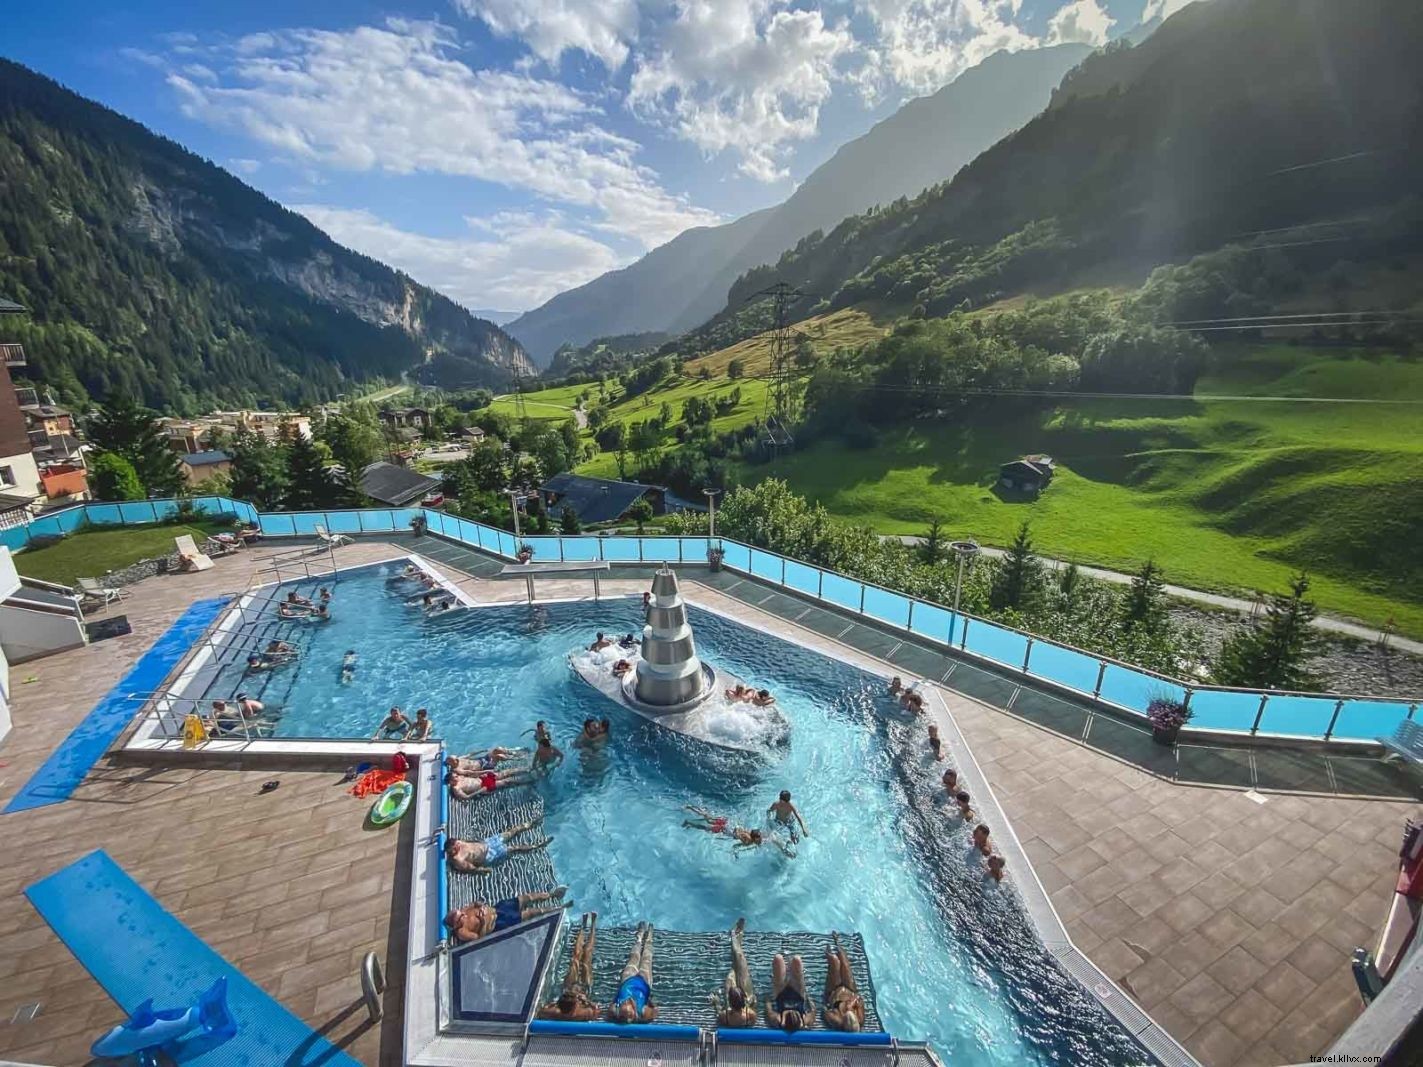 Belos lugares para visitar na Suíça